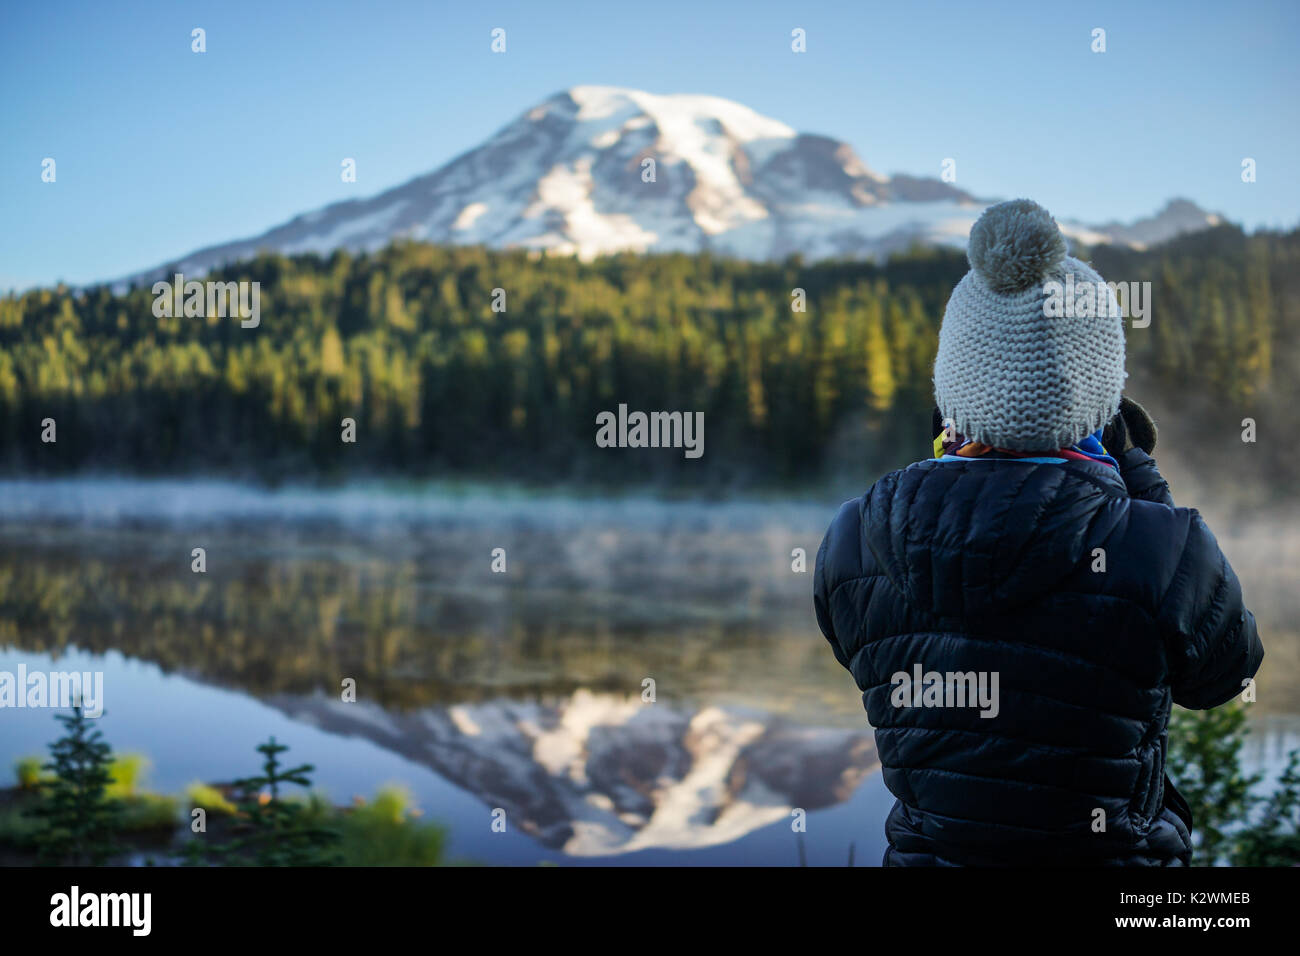 La donna fotografo è di scattare le foto della montagna e del lago alla riflessione dei laghi e il Parco Nazionale del Monte Rainier, Washington. Foto Stock